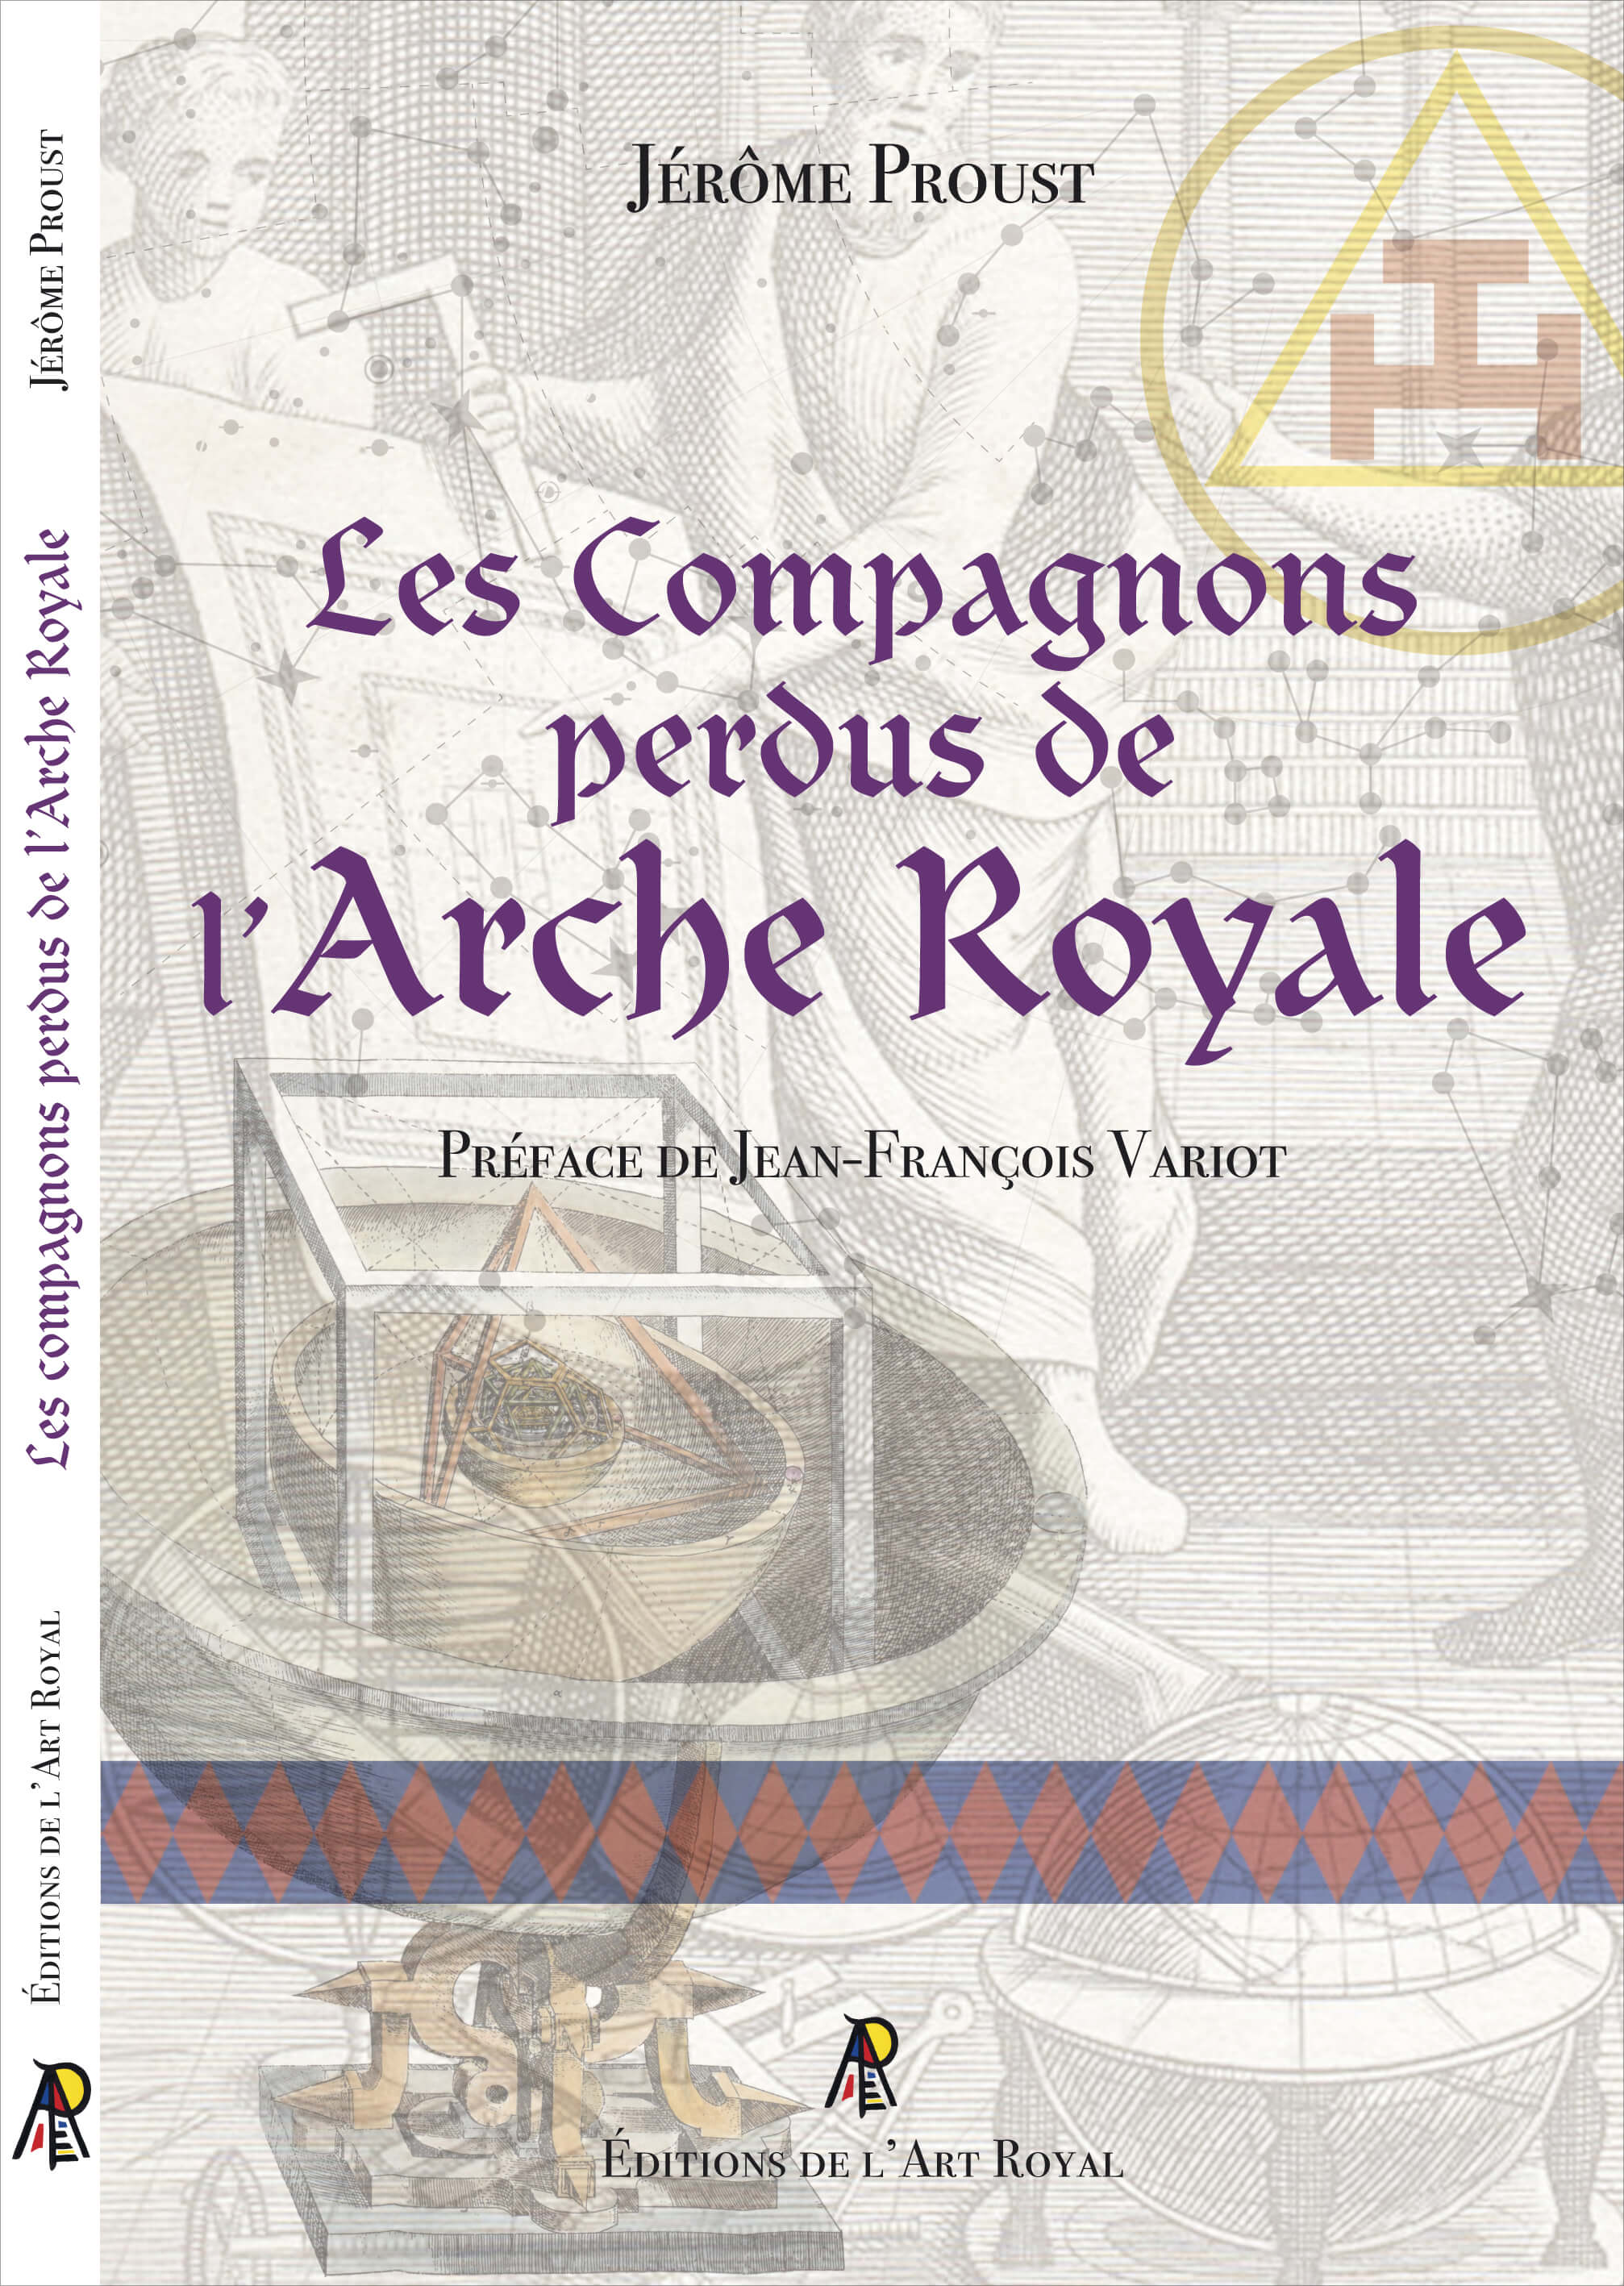 Les Compagnons perdus de l'Arche Royale, Jérôme Proust